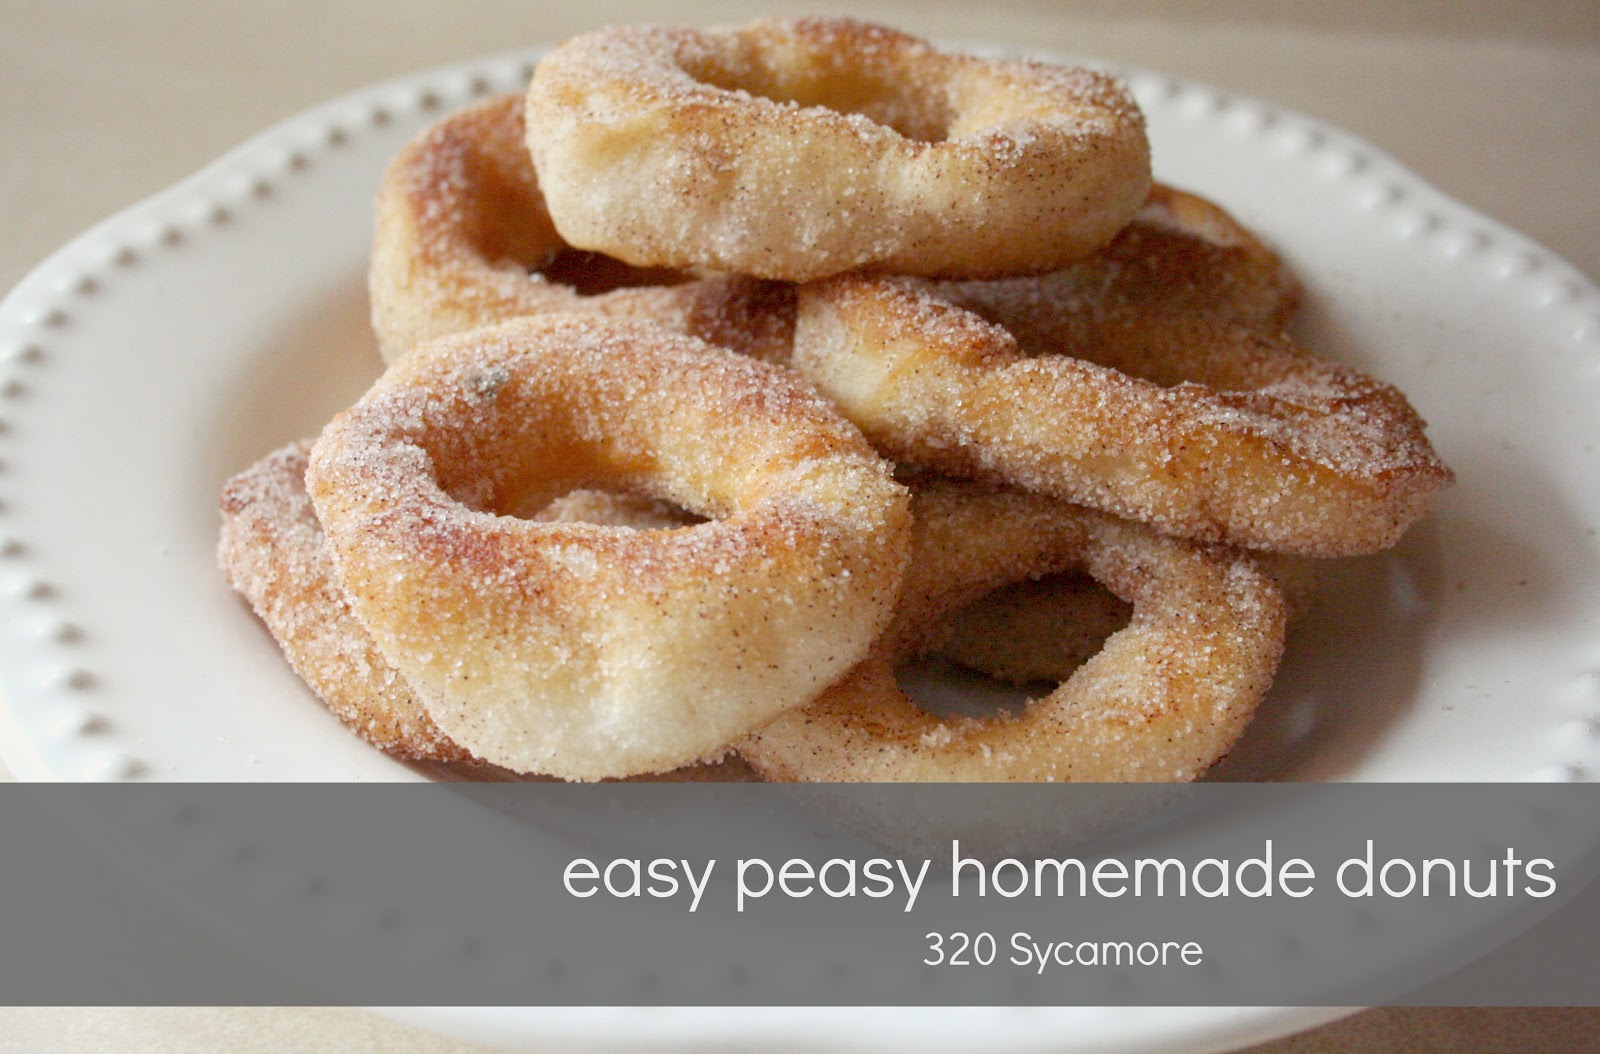 http://1.bp.blogspot.com/-U-To8F74lT0/UEAfaVfkMHI/AAAAAAAAXQM/sH6XkaULgps/s1600/easy+donut+recipe.jpg